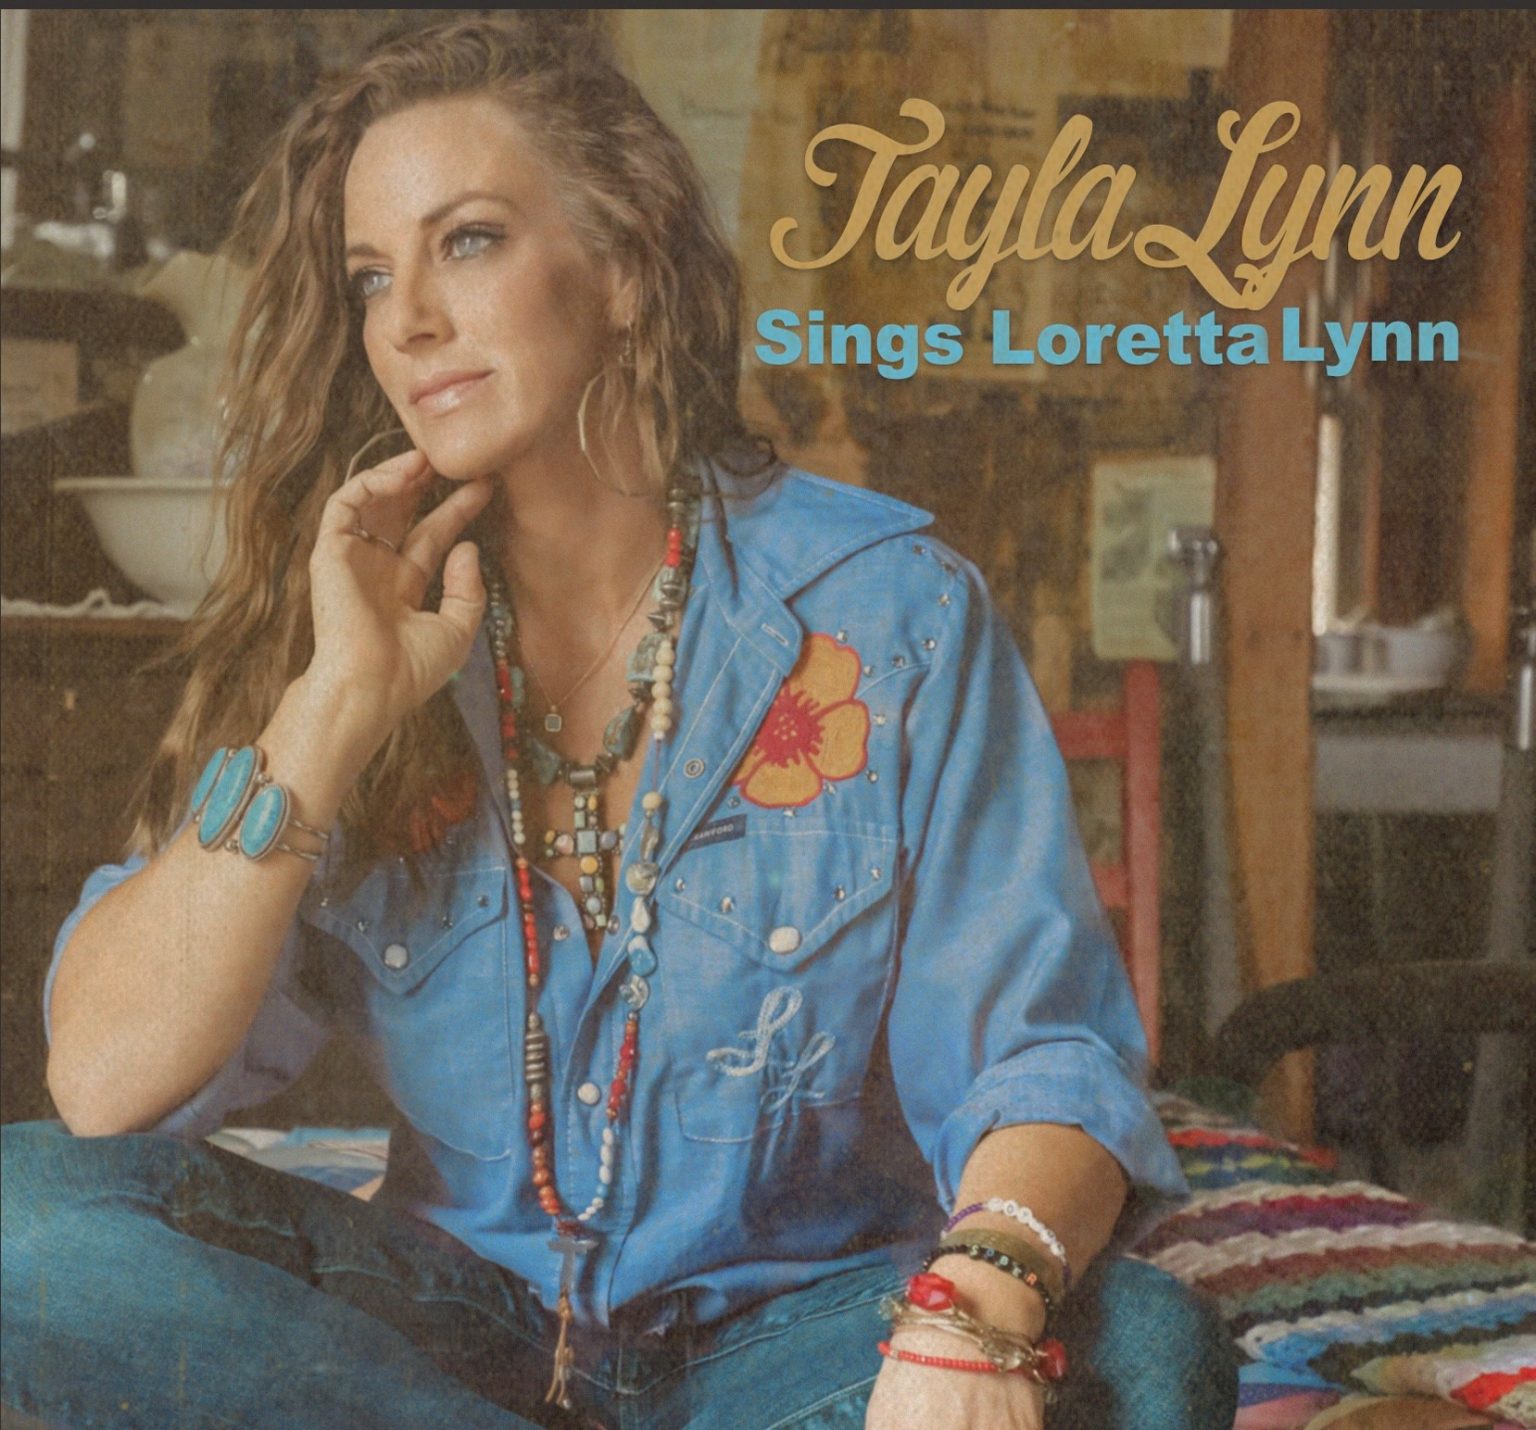 Female Friday Tayla Lynn Sounds Like Nashville